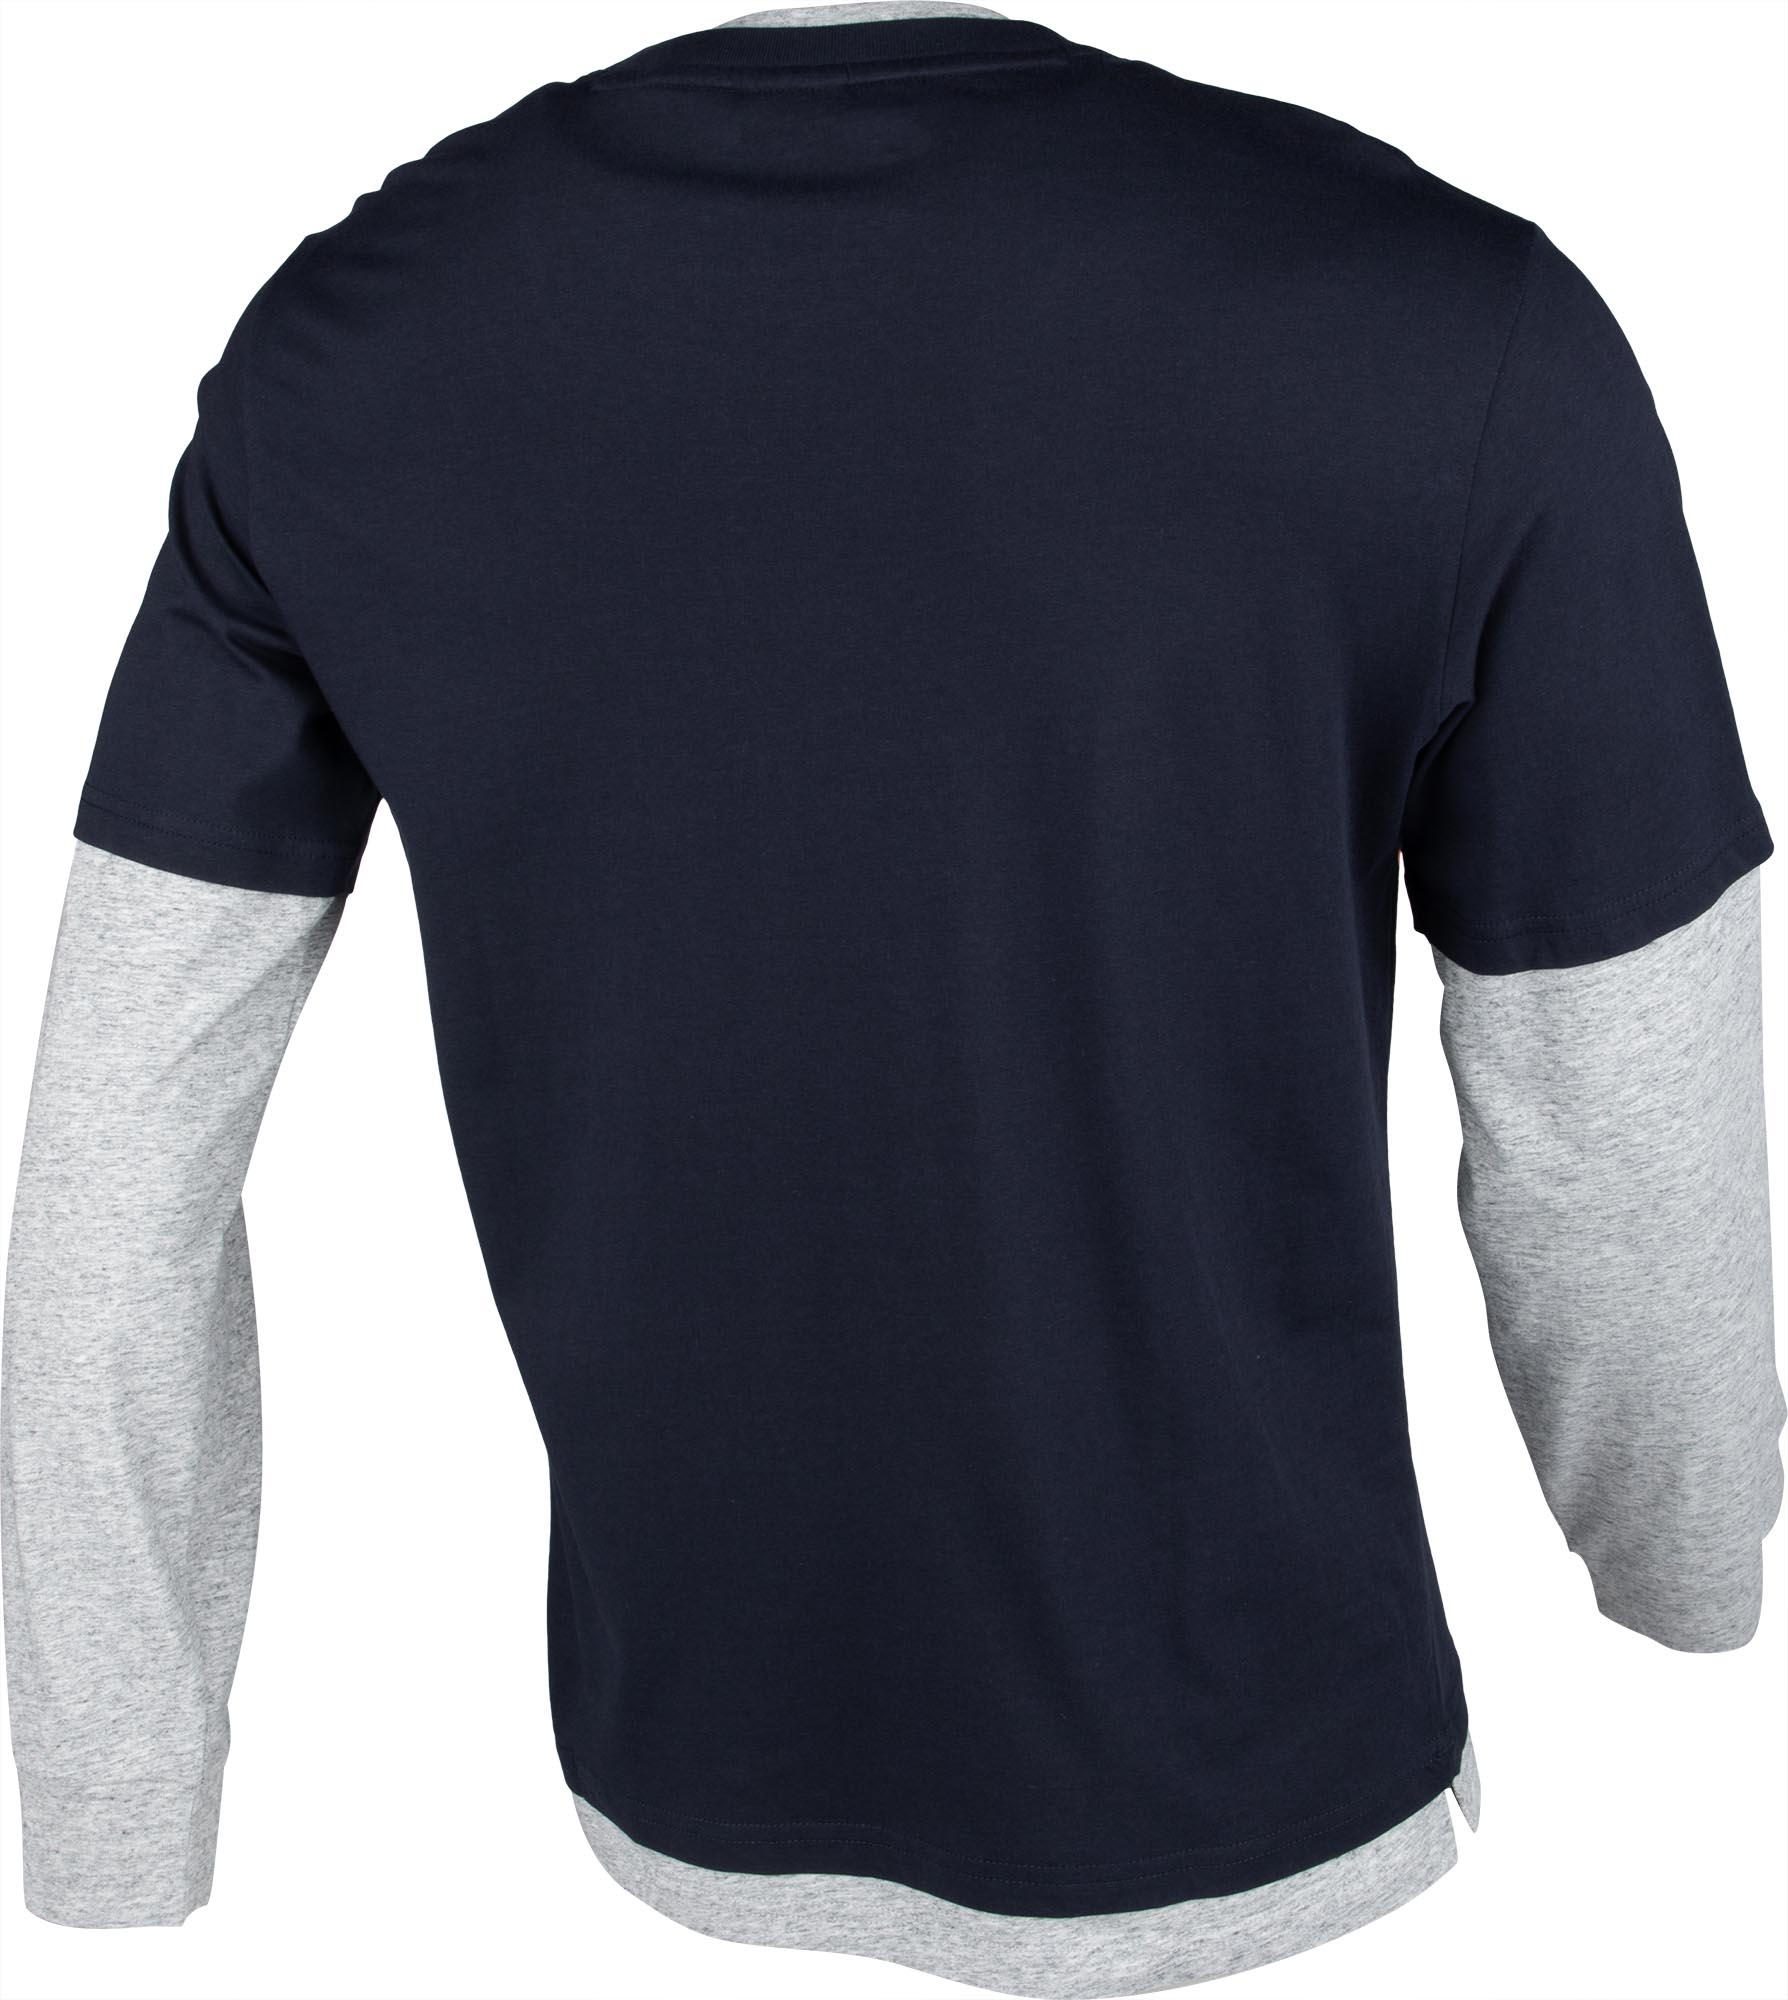 Men’s long sleeve T-shirt